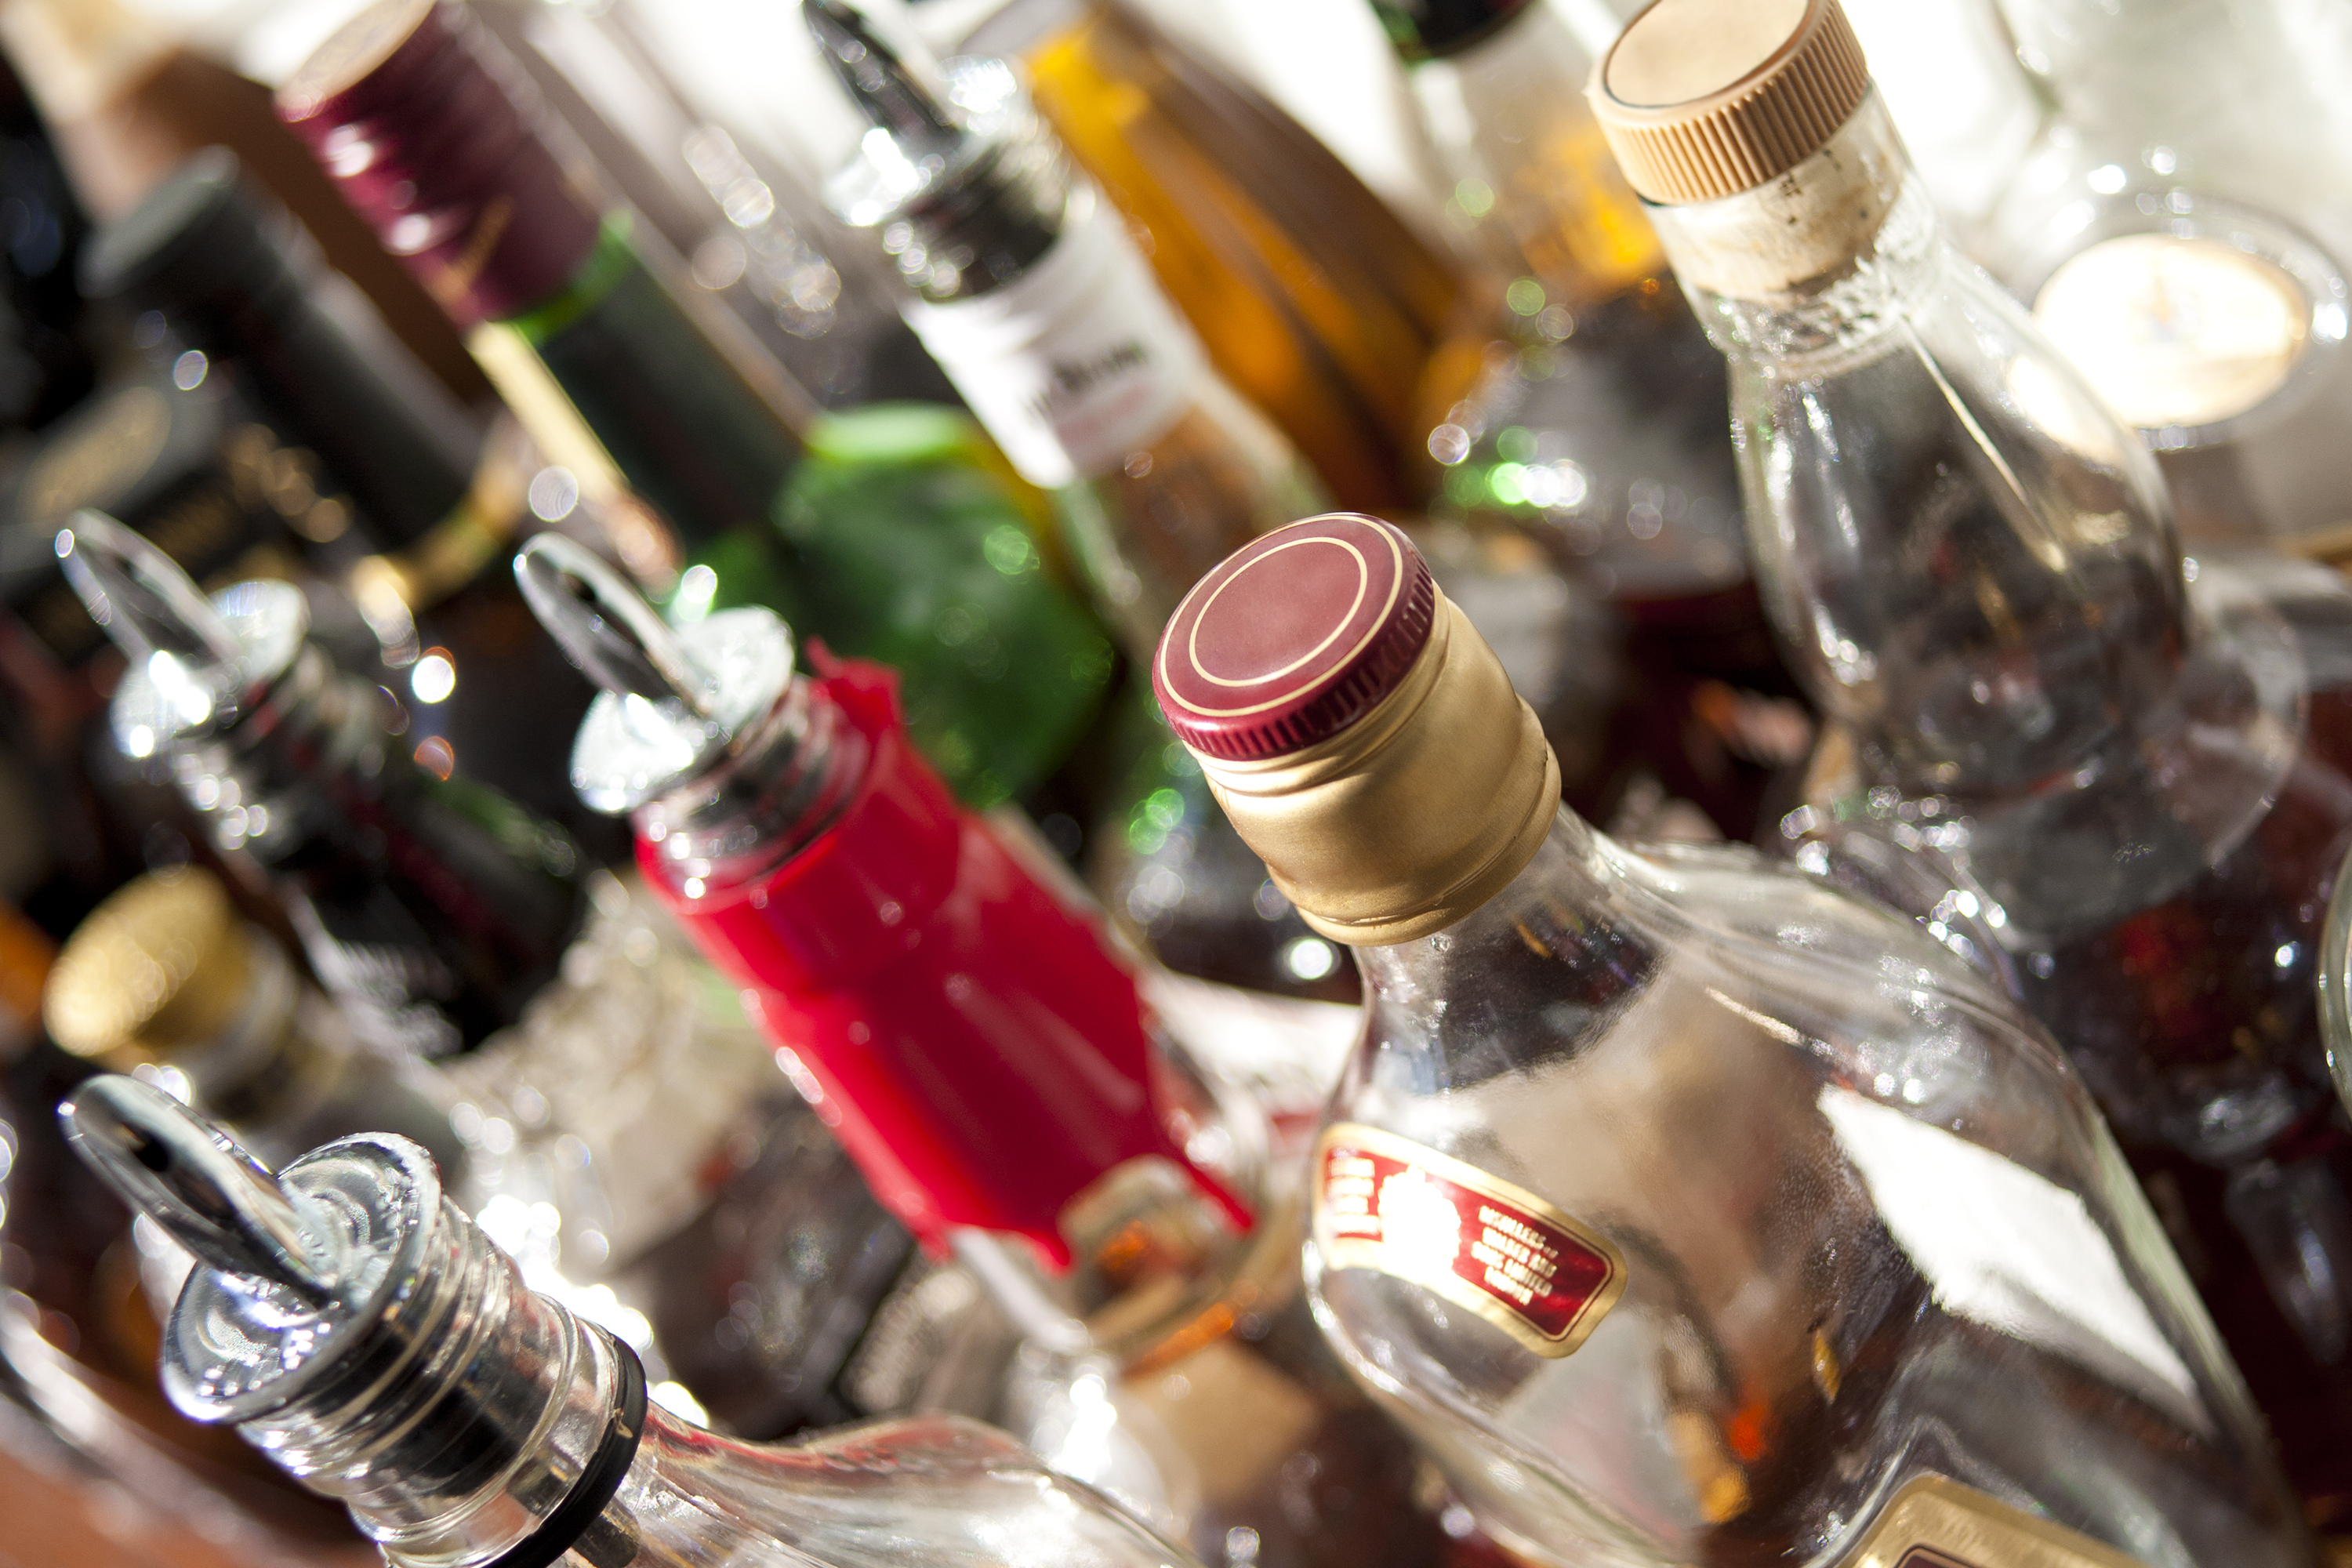 Соглашение предоставит казахстанскому алкоголю доступ на рынки стран ТС